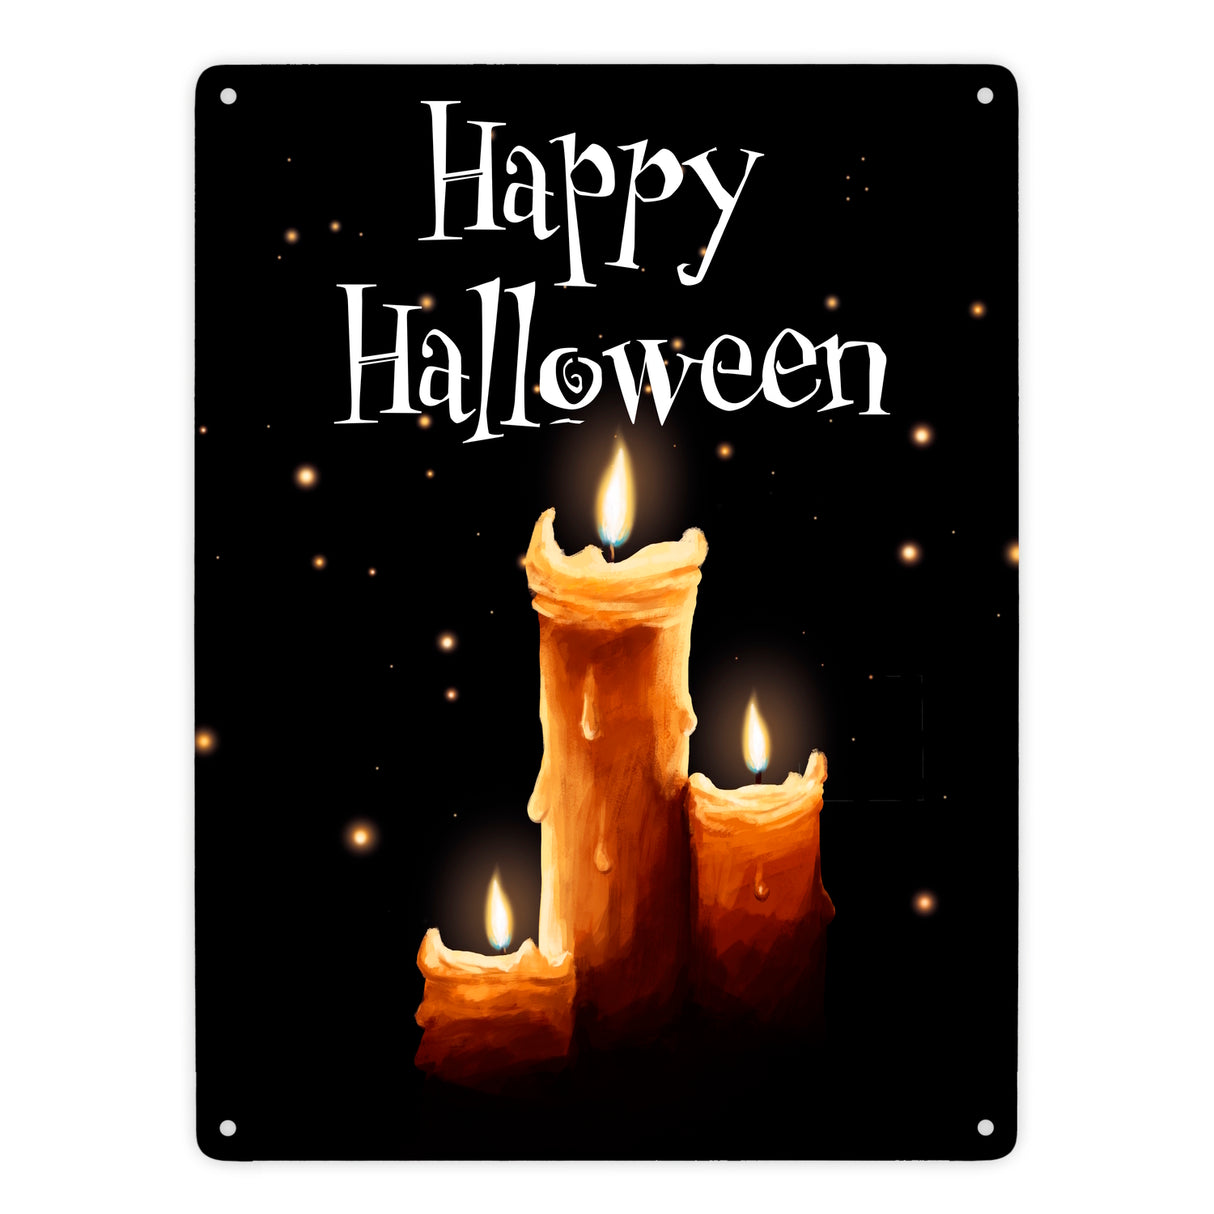 Metallschild mit gruseligem Kerzen Motiv und Happy Halloween Schriftzug